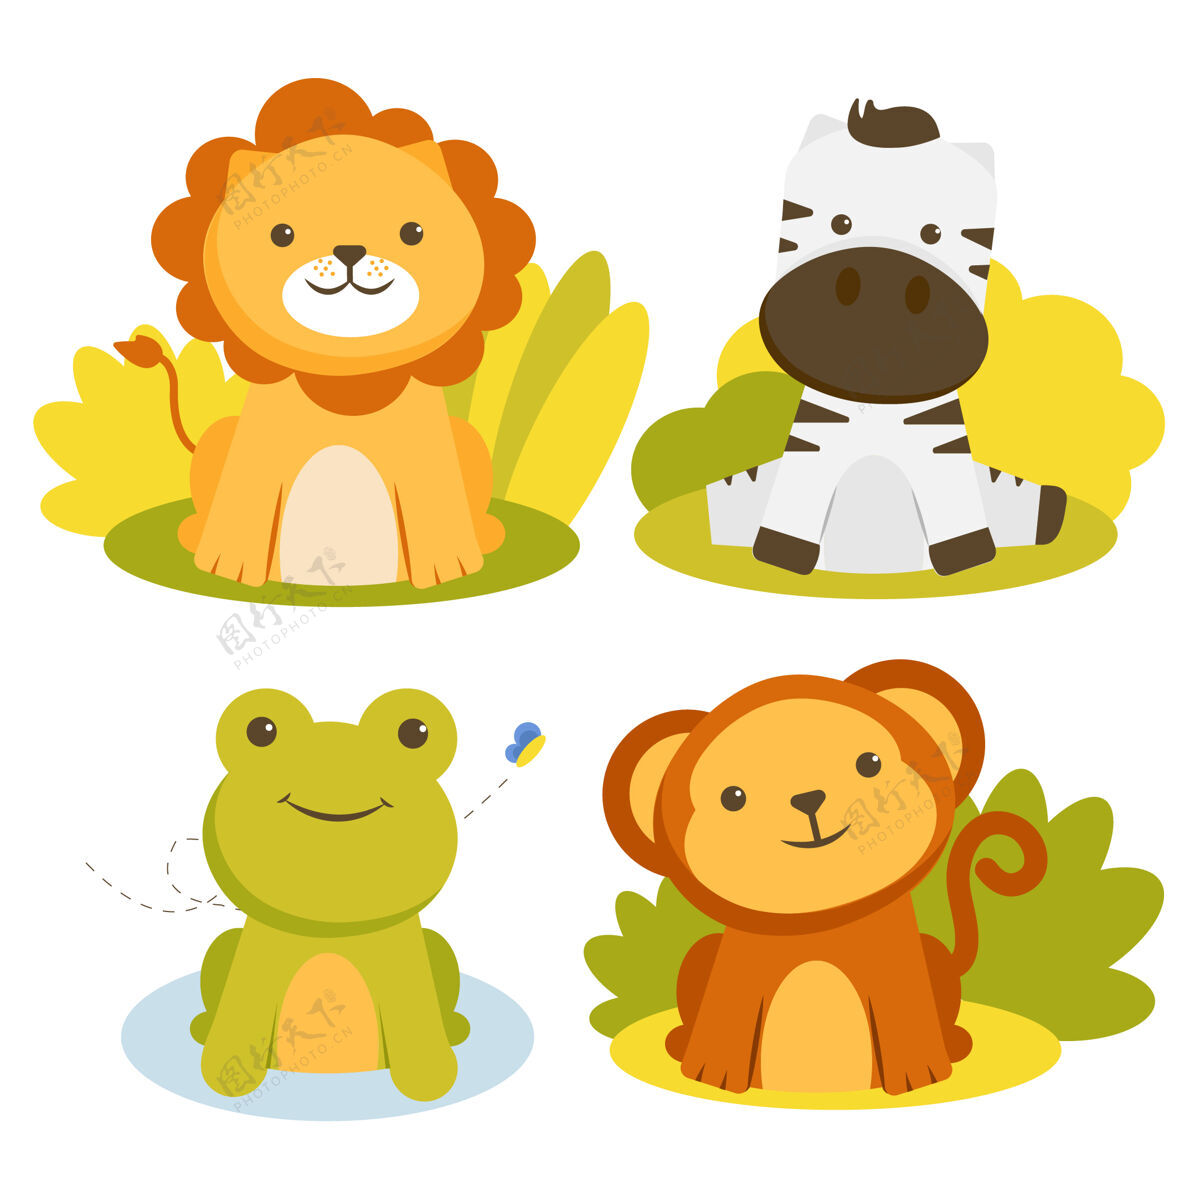 有趣集动物性格与狮子 斑马 青蛙和猴子贴纸脸森林